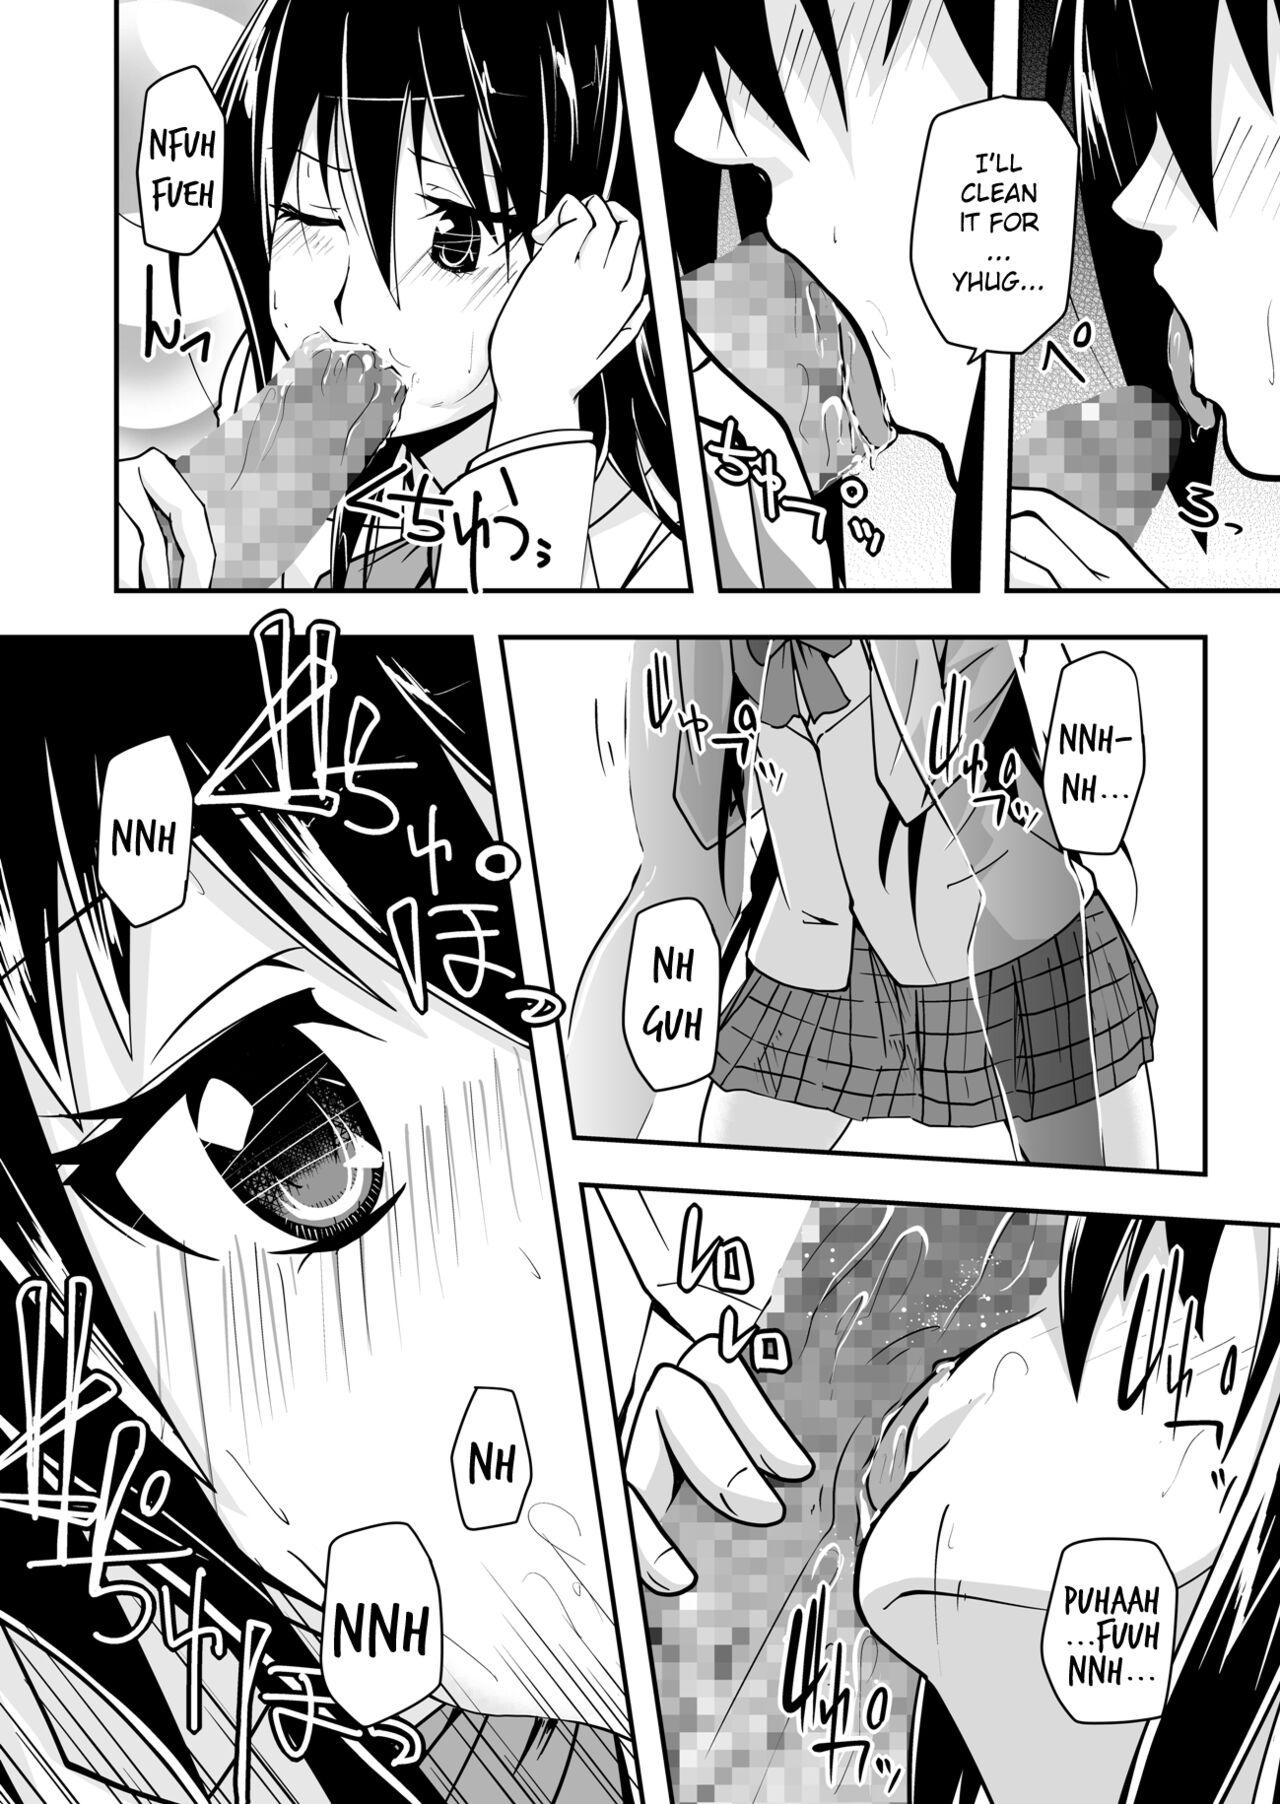 Women Sucking Dick *********! 1 - Seitokai yakuindomo Girl Get Fuck - Page 10